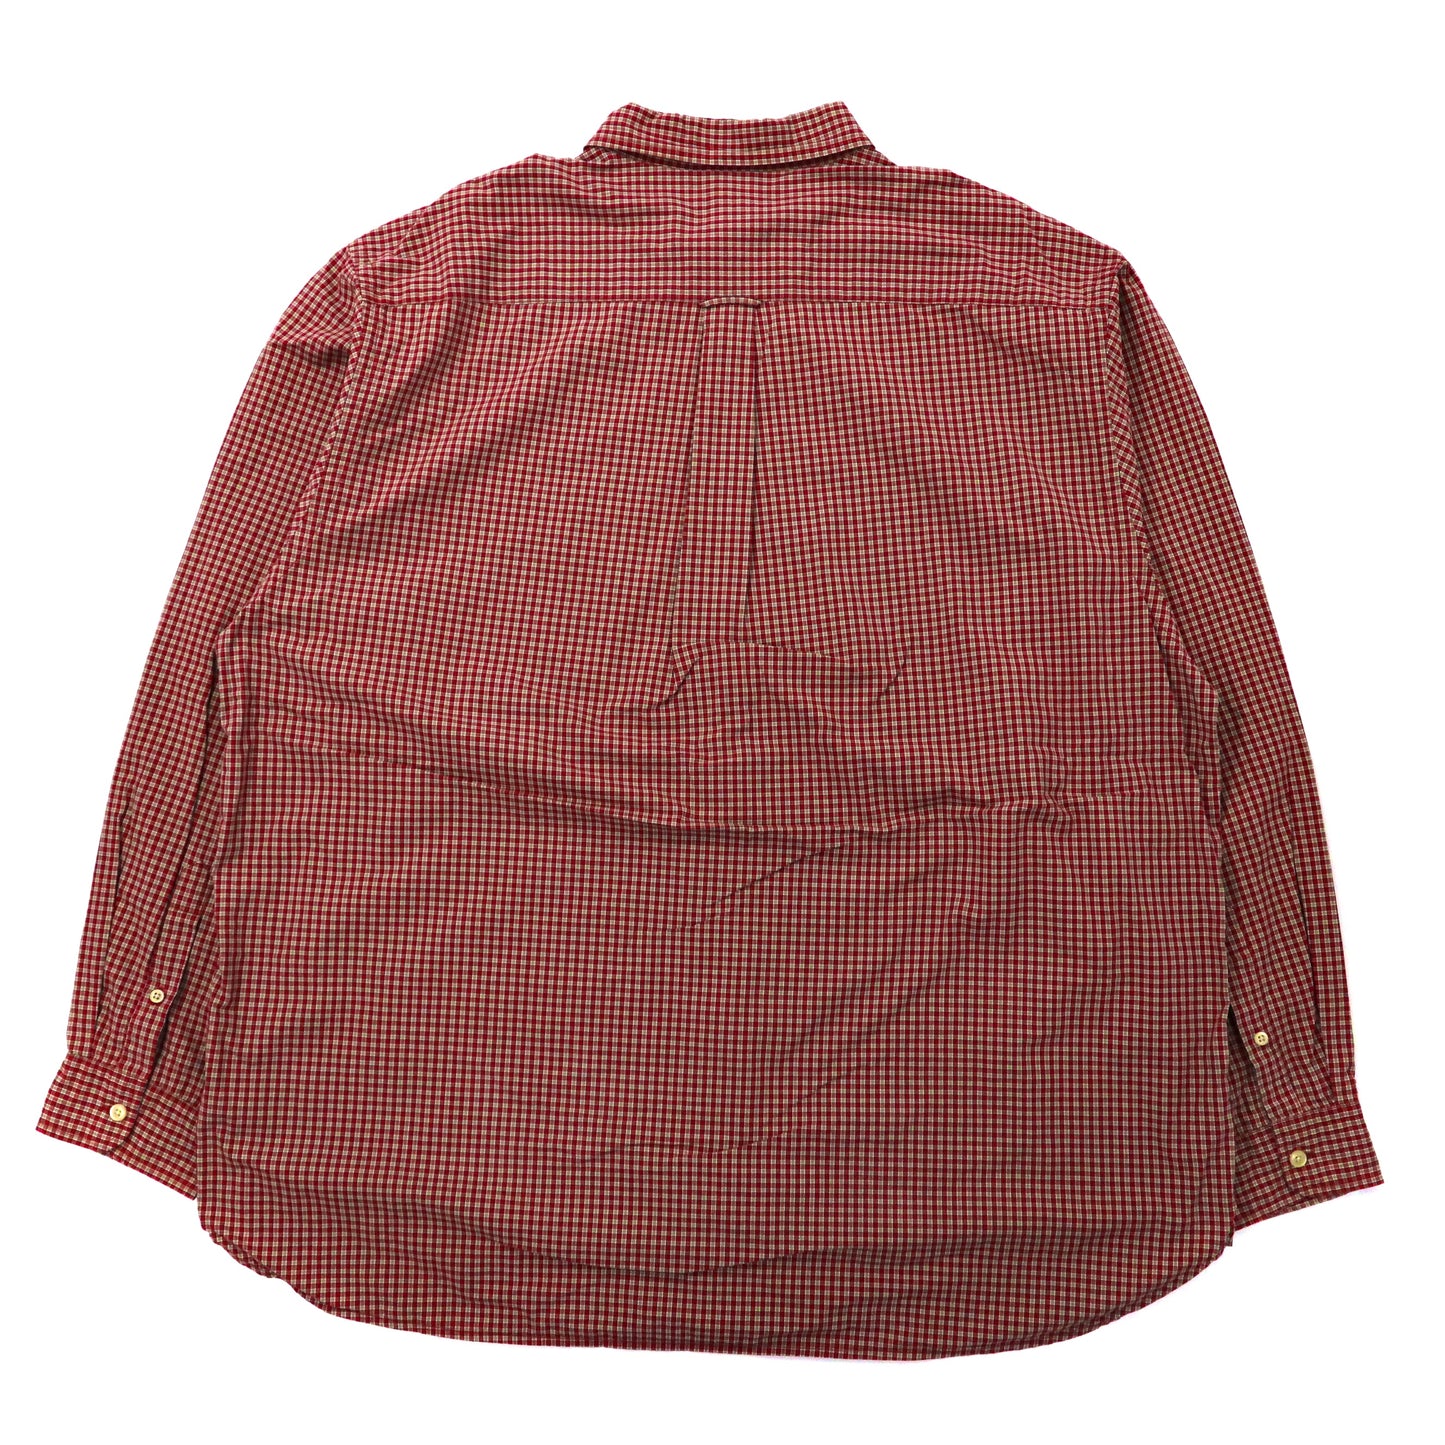 NAUTICA ビッグサイズ ボタンダウンシャツ XXL レッド チェック コットン ワンポイントロゴ刺繍